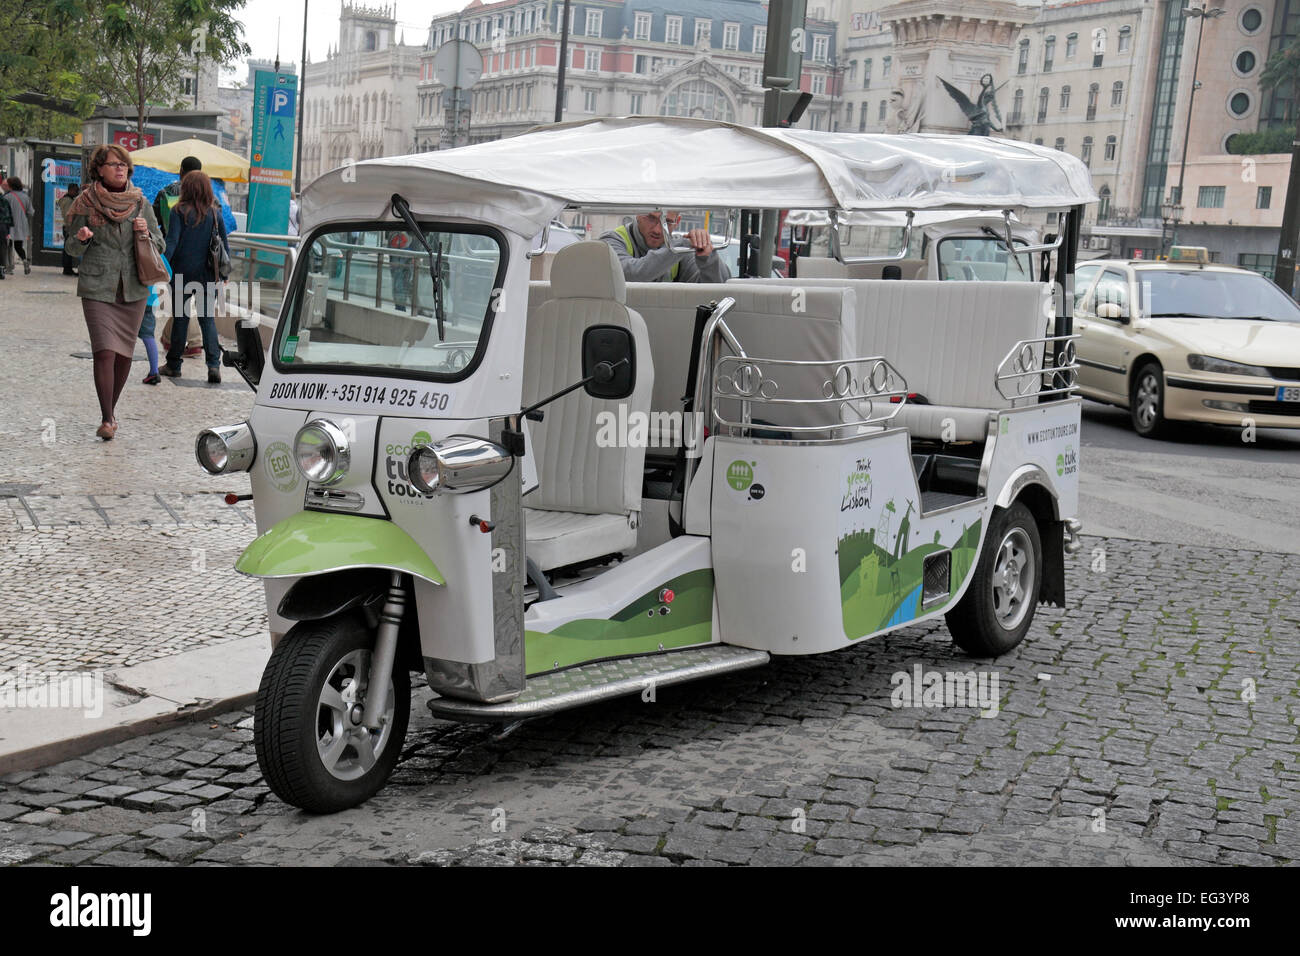 A three wheel tuk tuk-like tourist taxi (EcoTukTours) in the Parque dos Restauradores area of Lisbon, Portugal. Stock Photo